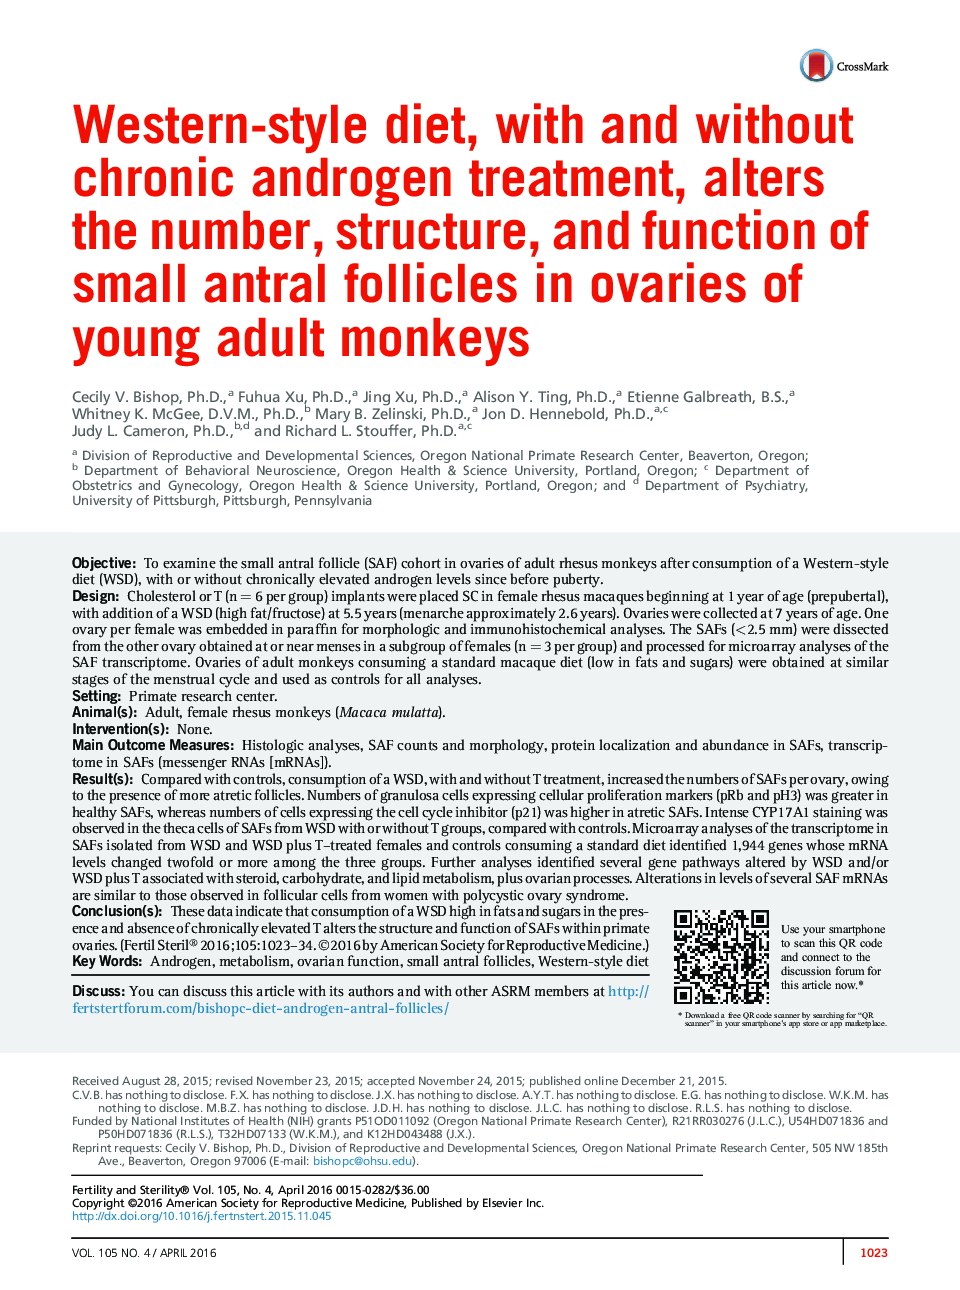 رژیم غذایی غربی، با و بدون درمان مزمن آندروژنی، تغییر تعداد، ساختار و عملکرد فولیکول های انترال کوچک در تخمدان ها از میمون های جوان 